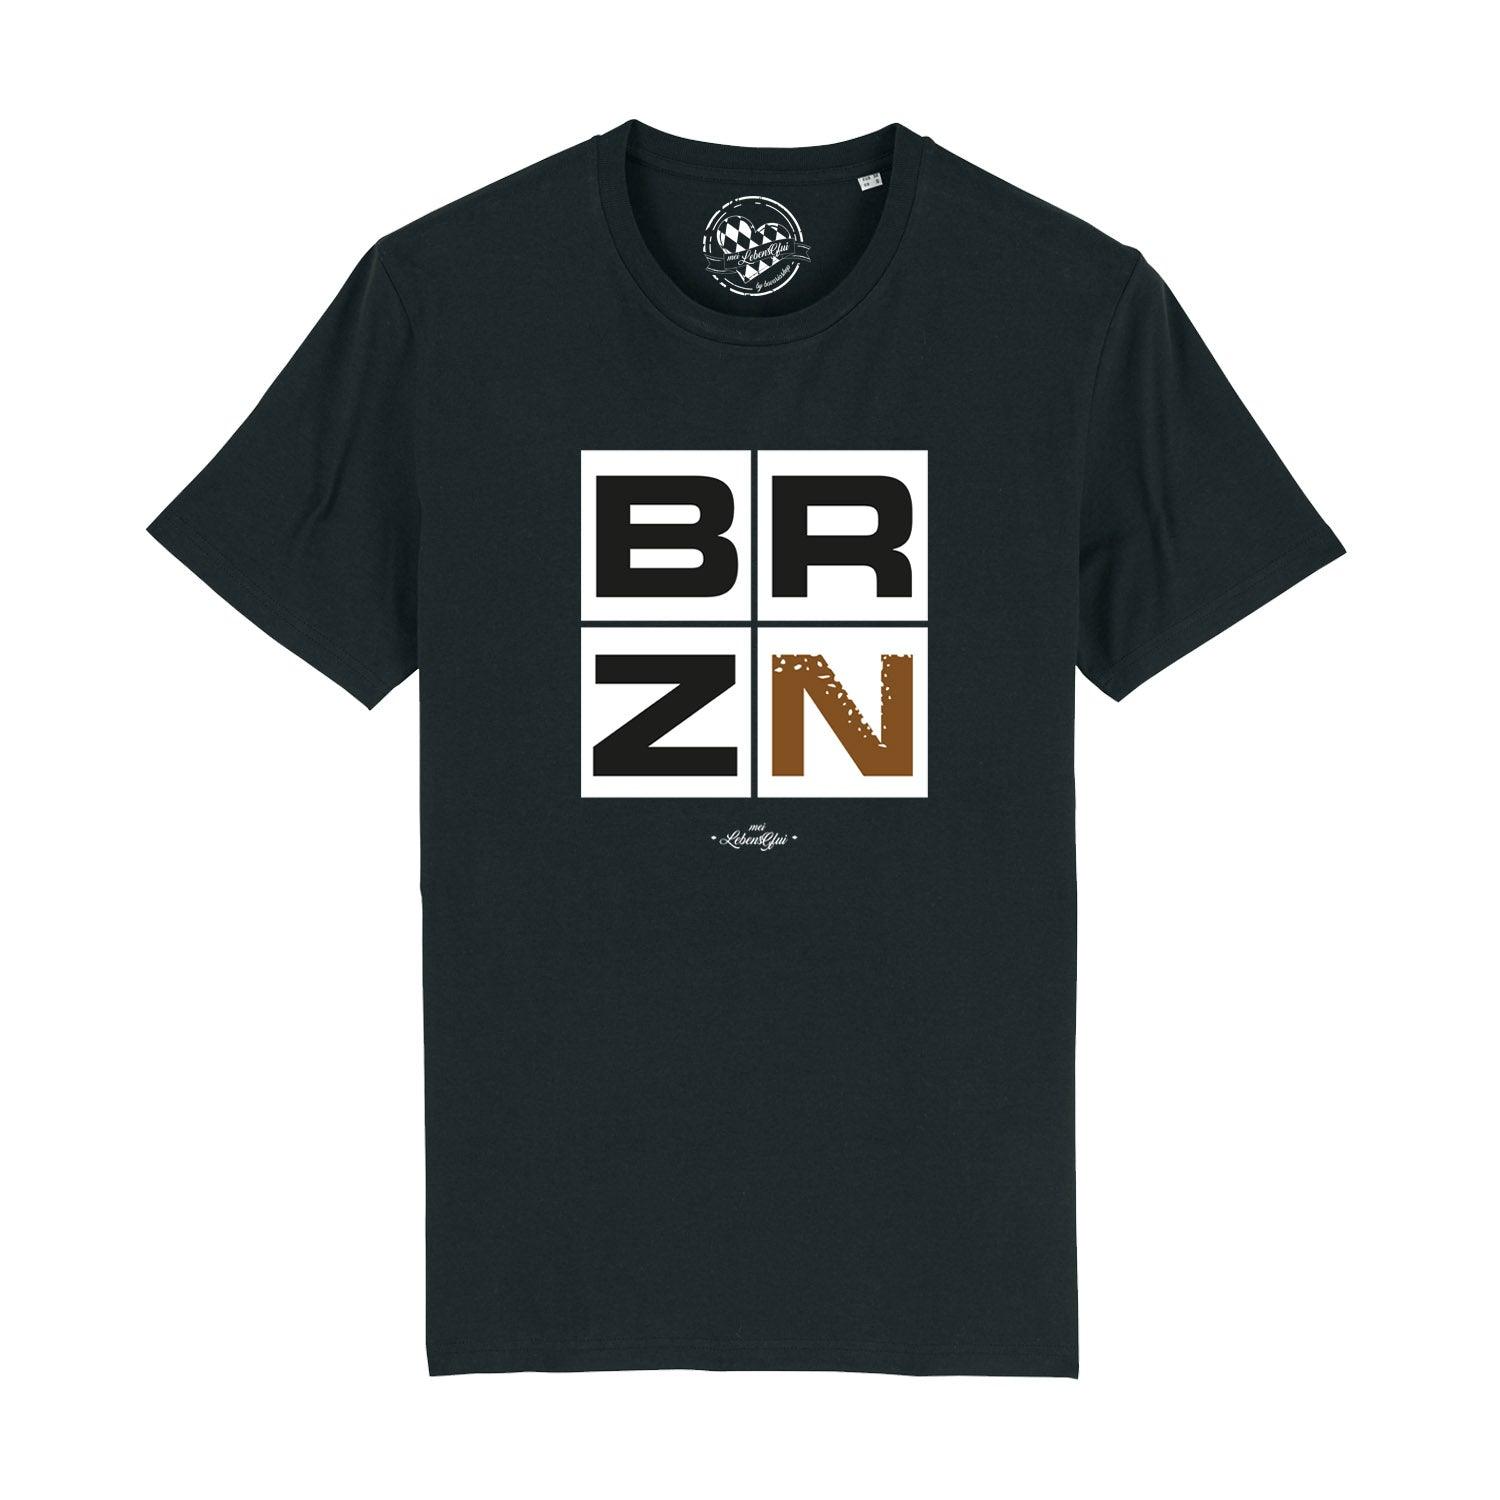 Herren T-Shirt "BRZN" - bavariashop - mei LebensGfui